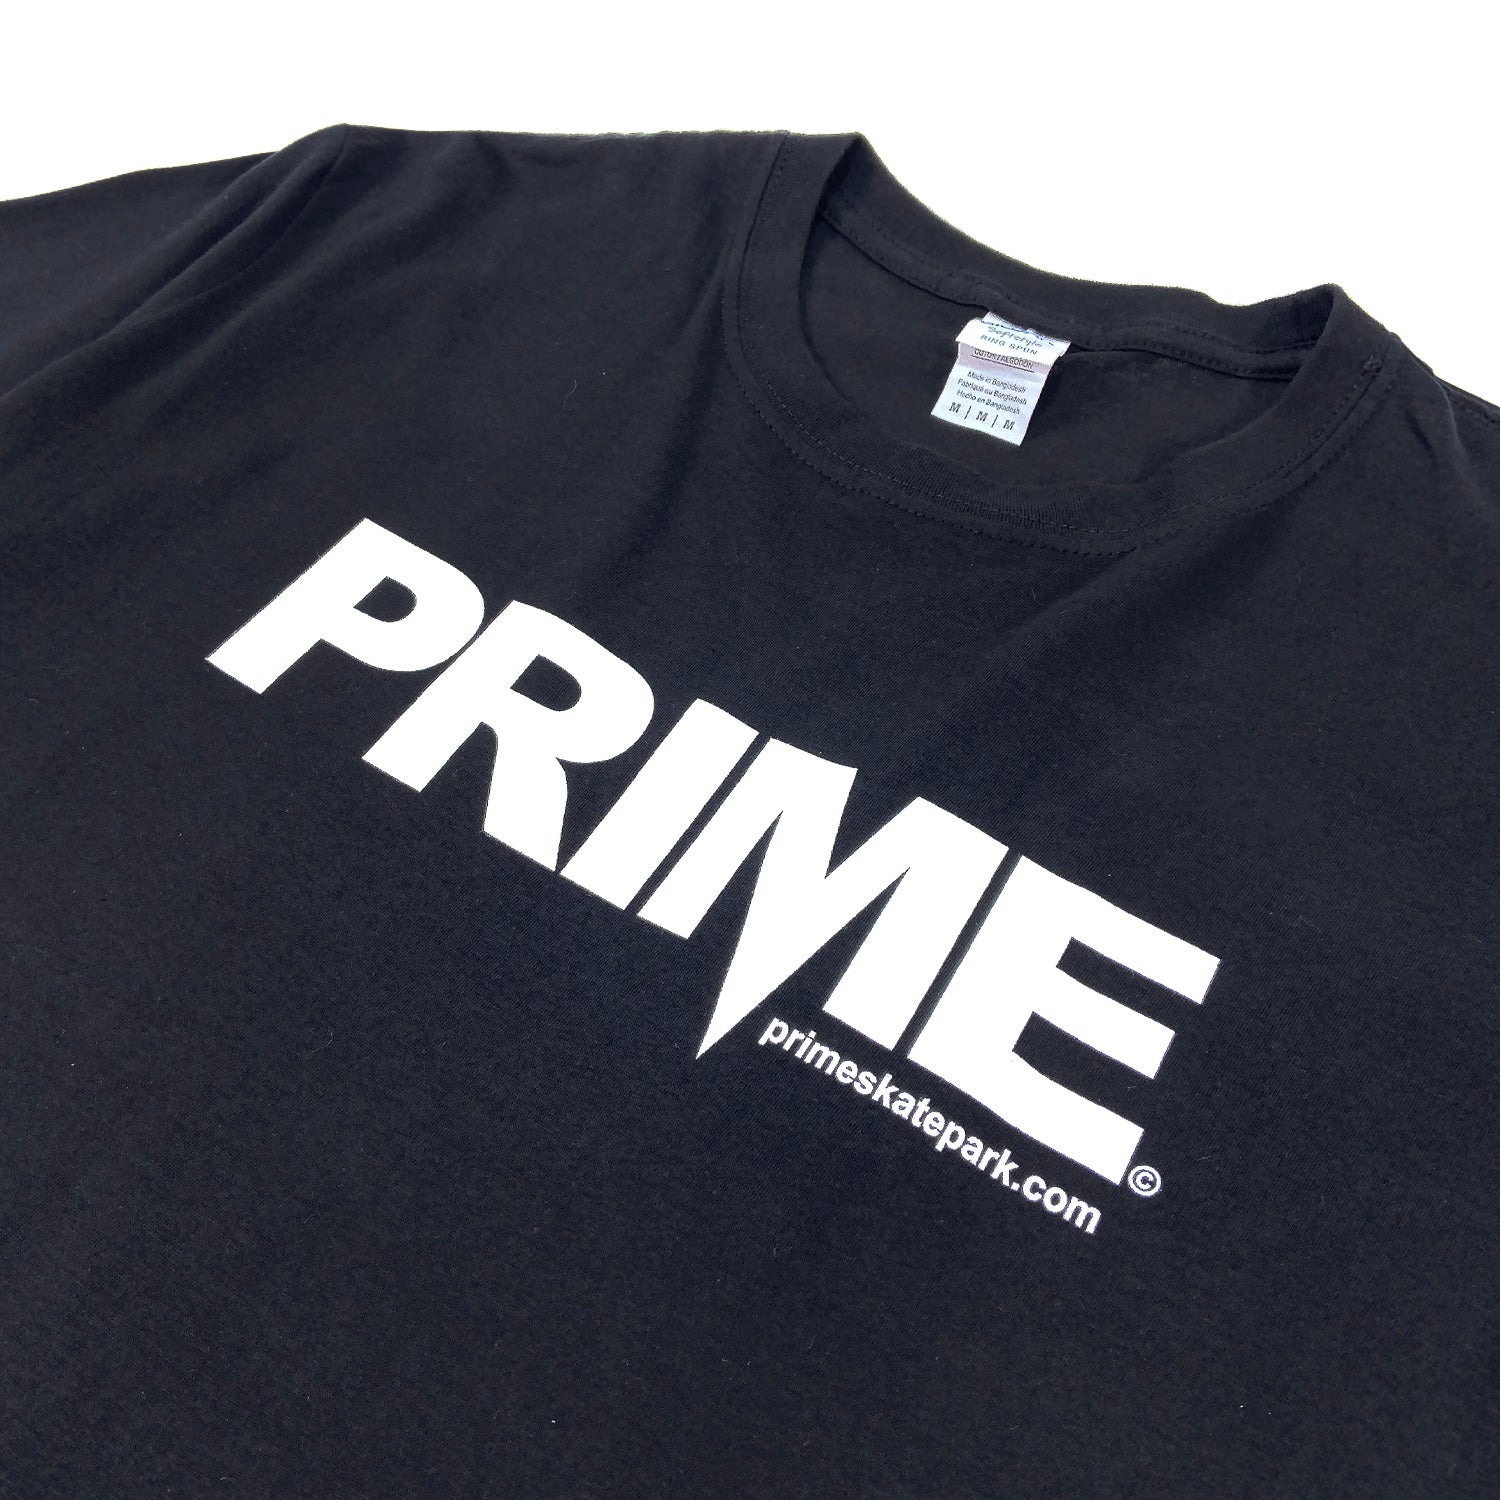 Prime Delux OG Logo T Shirt - Black / White - Prime Delux Store